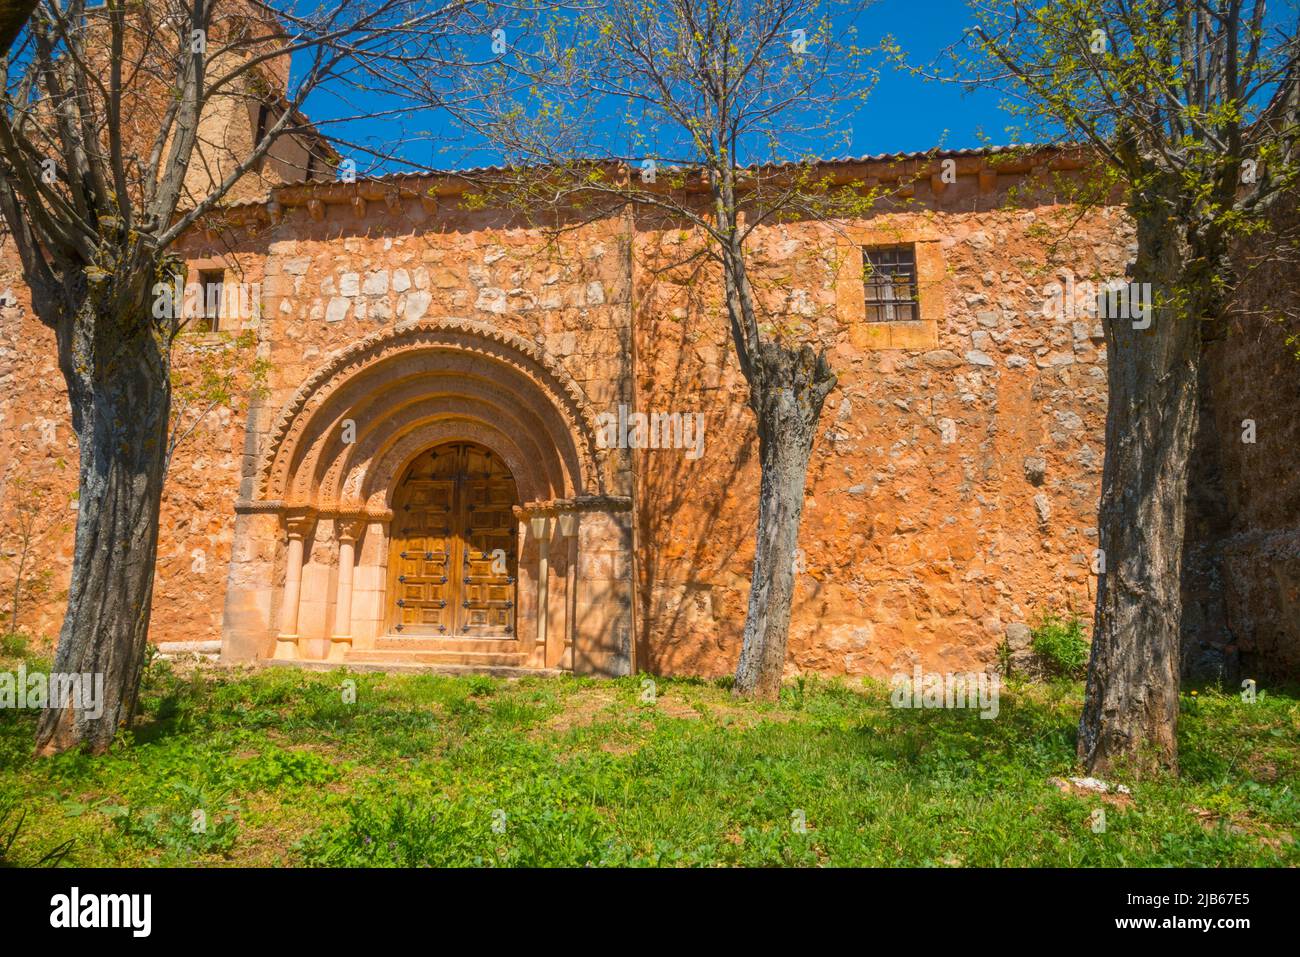 Facade of the church. Ligos, Soria province, Castilla Leon, Spain. Stock Photo